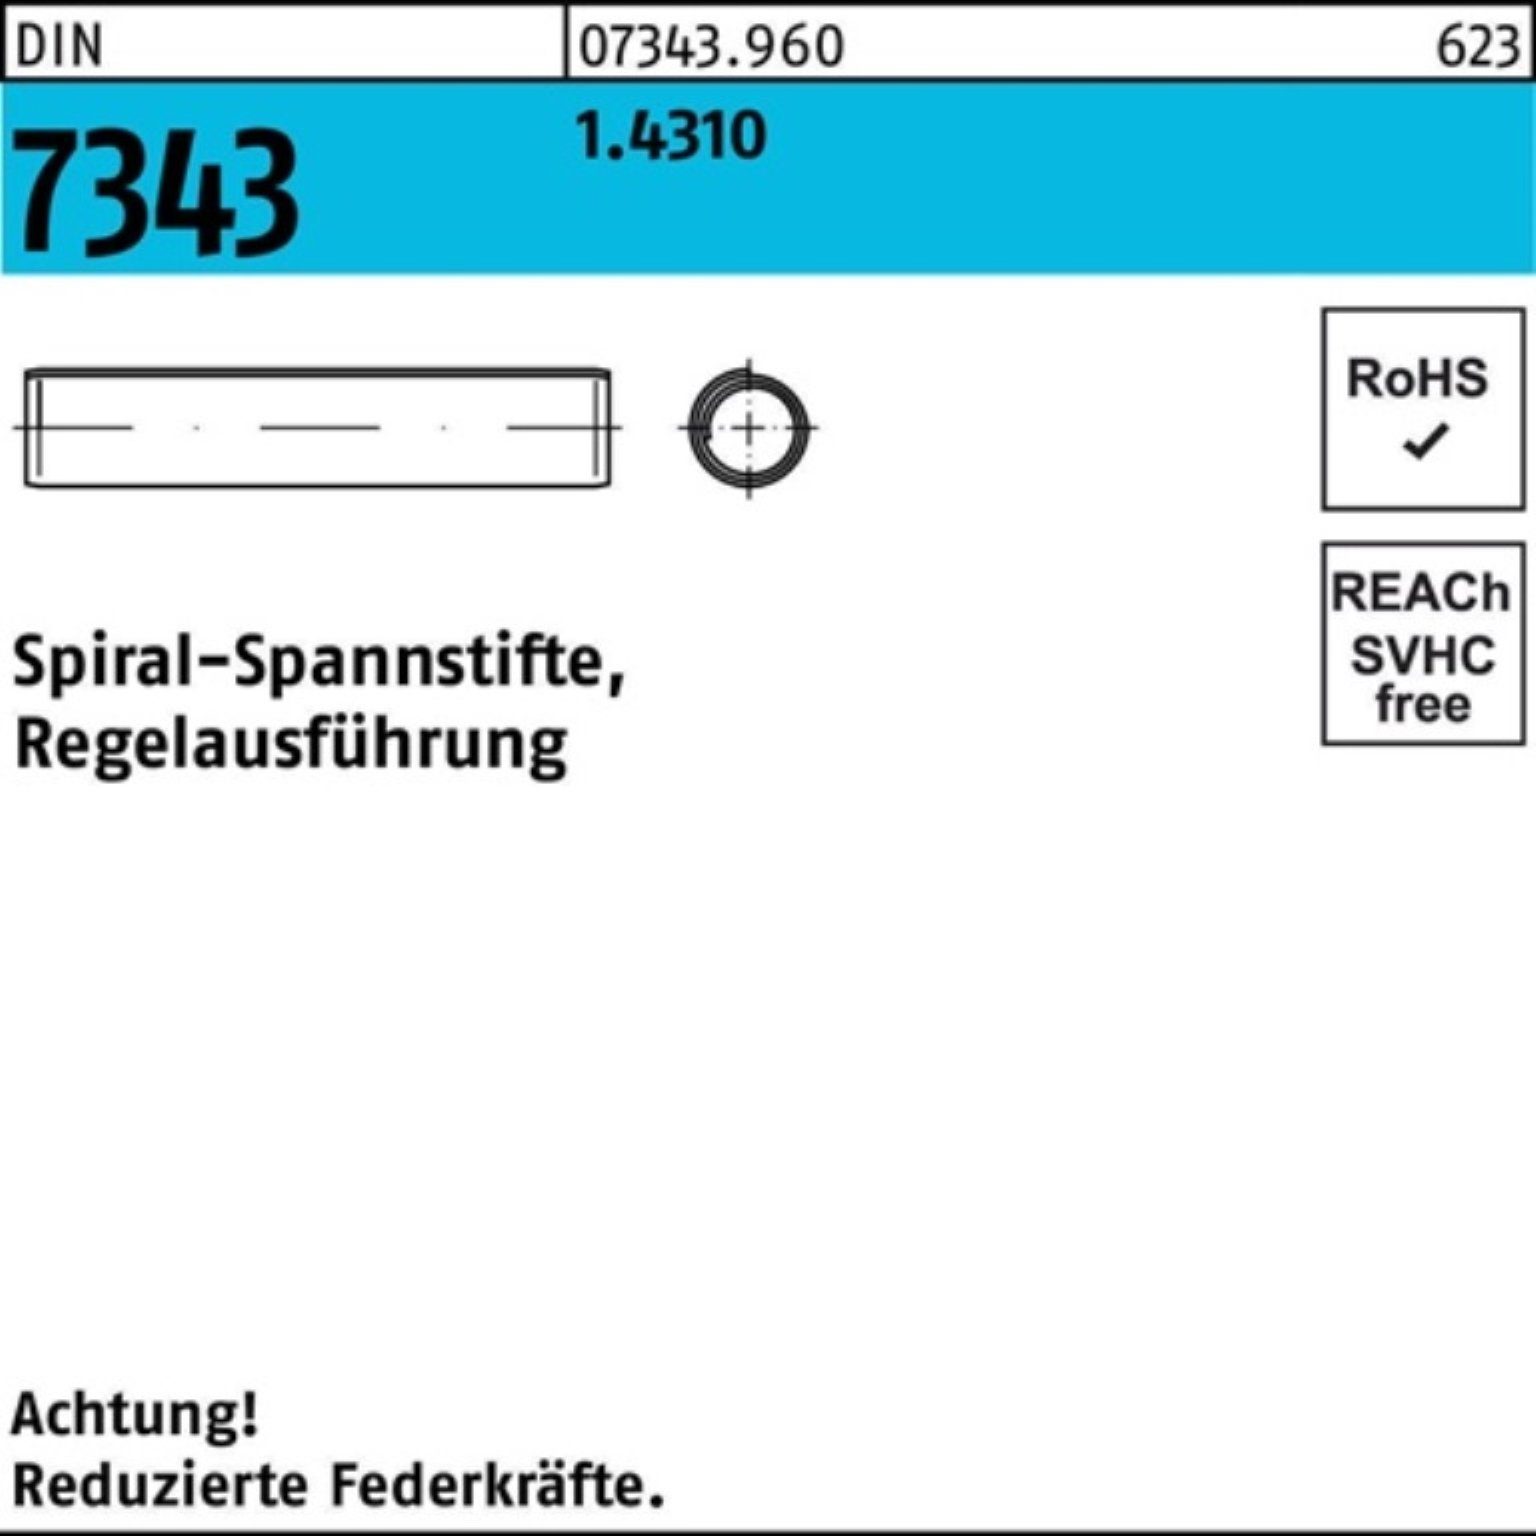 Reyher Spannstift 500er Pack 8750 DIN 1.4310 Spiralspannstift 4x 7343/ISO 12 Regelausf